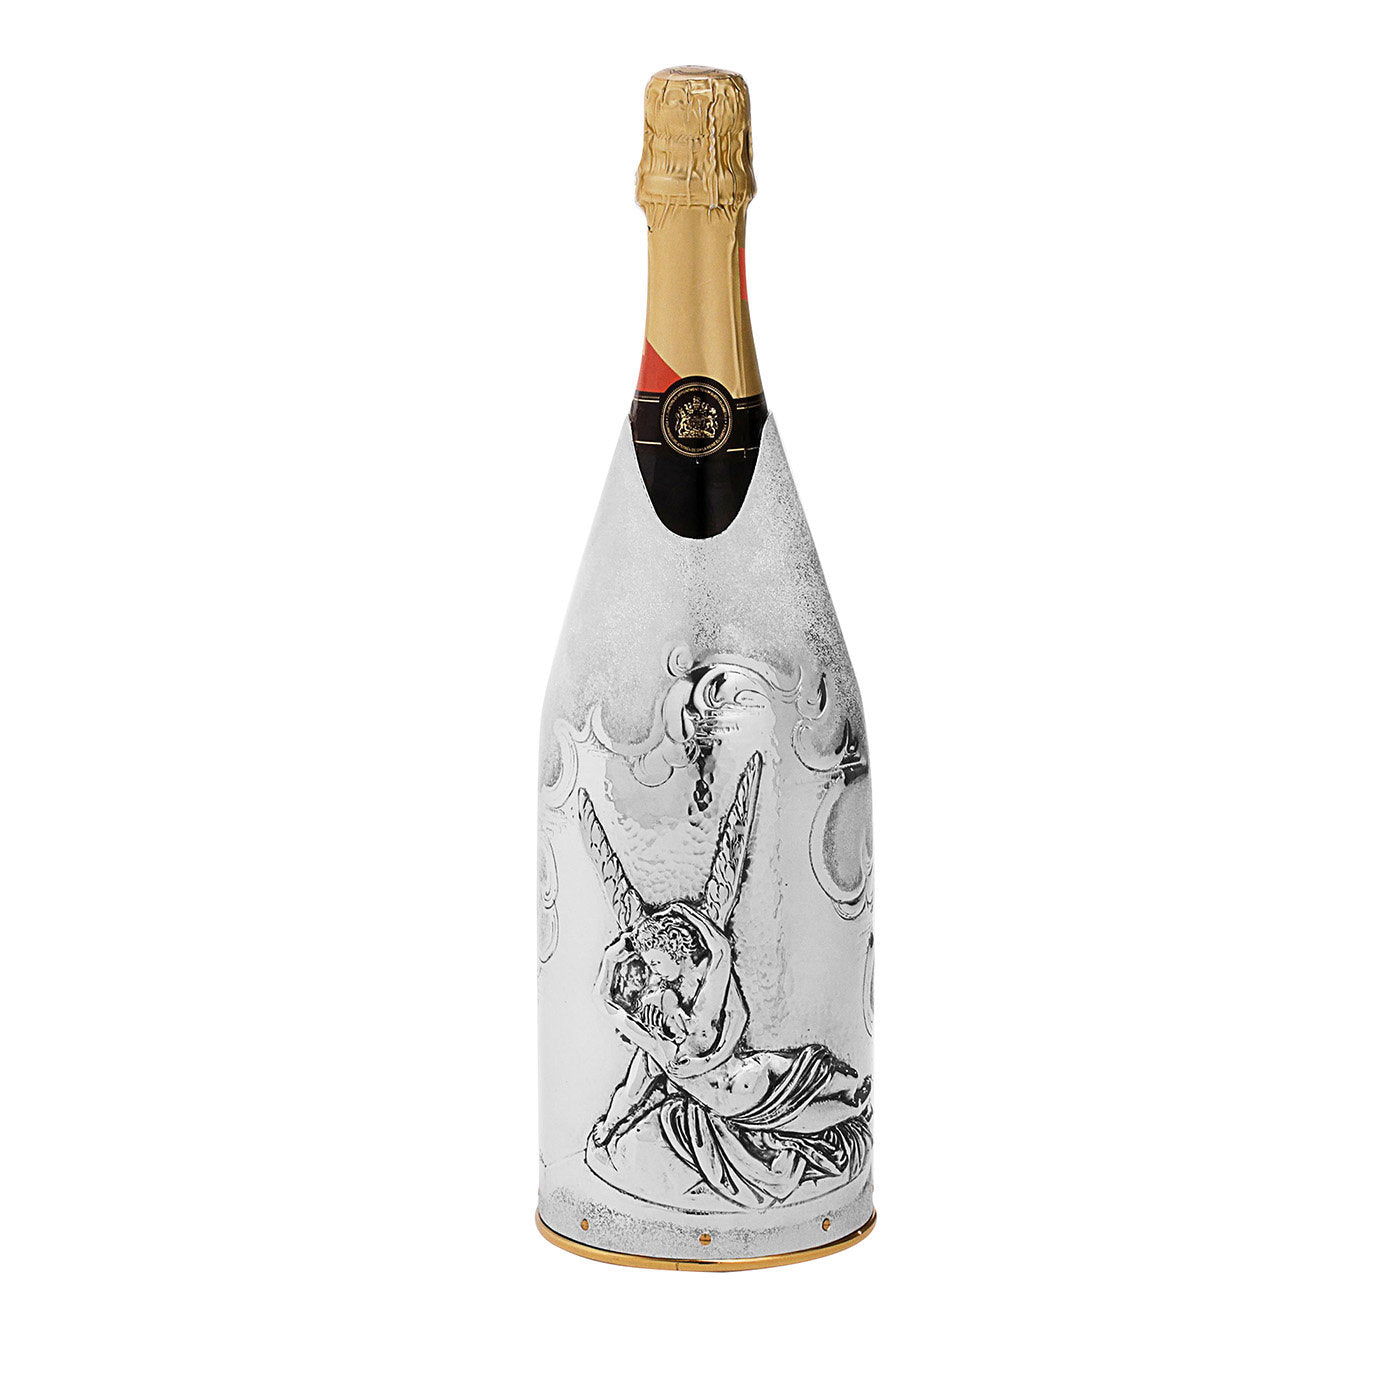 Couverture de champagne Amore e Psiche par Giuliano Foglia - Vue principale